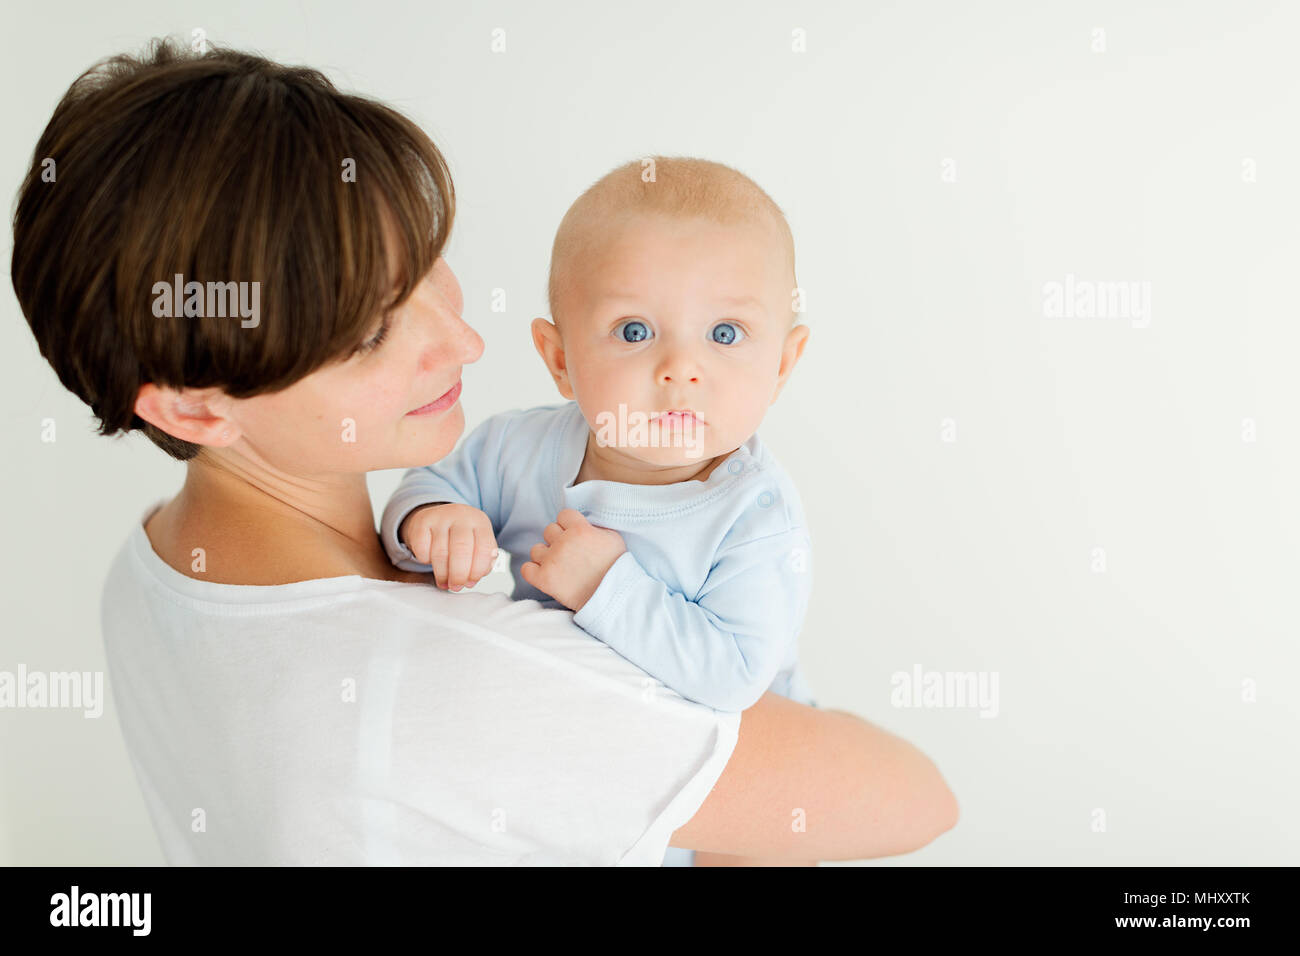 Madre sosteniendo Baby Boy, mirando por encima del hombro a la cámara Foto de stock